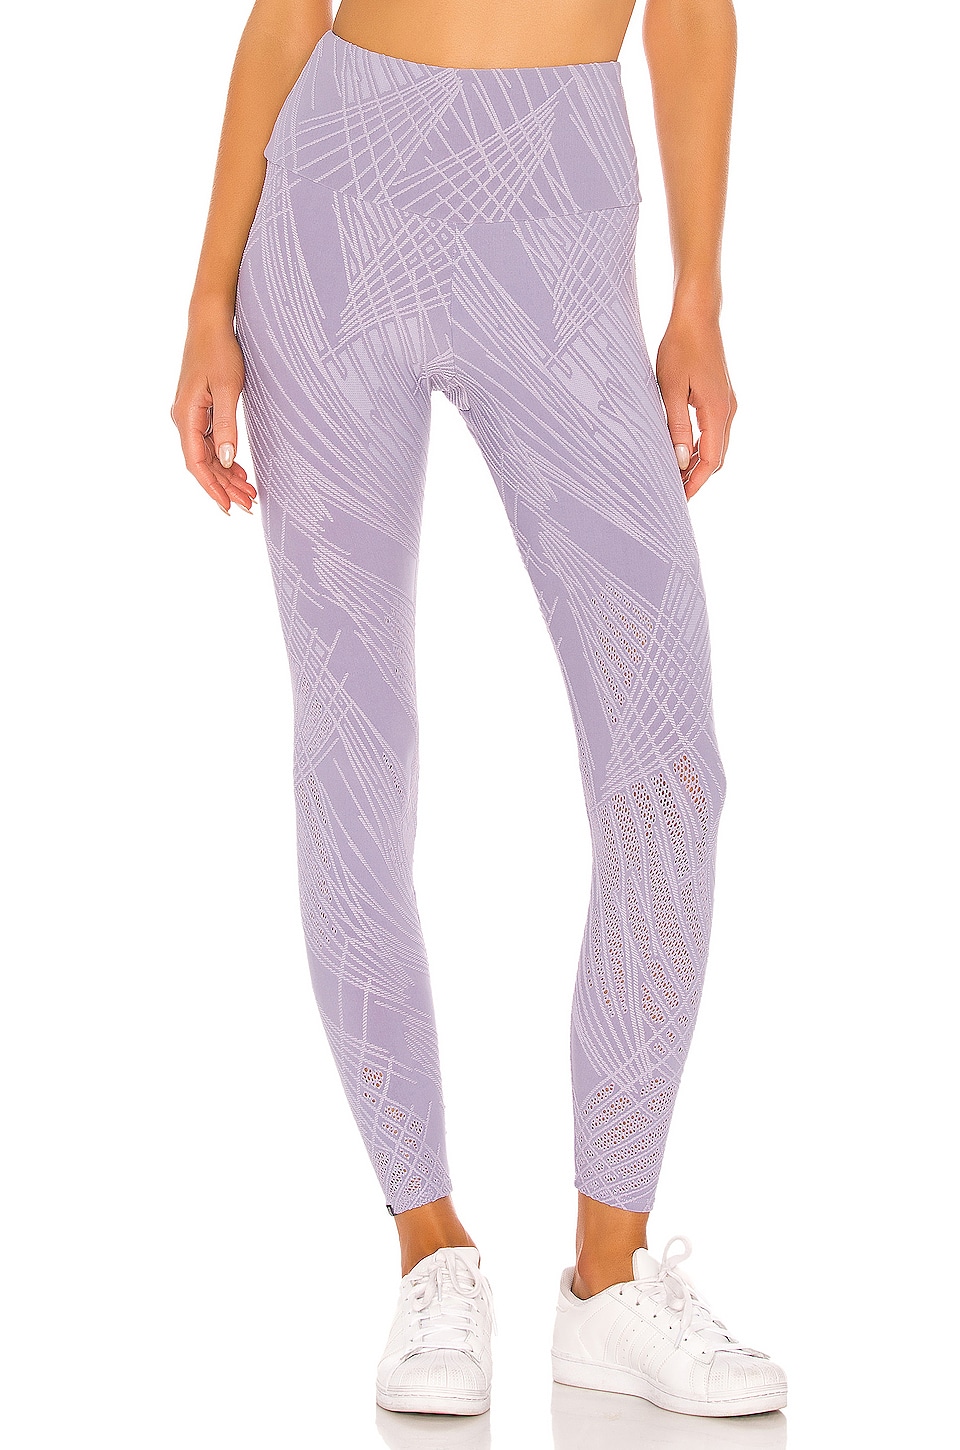 Legging in Lavender. Revolve Women Clothing Pants Leggings 